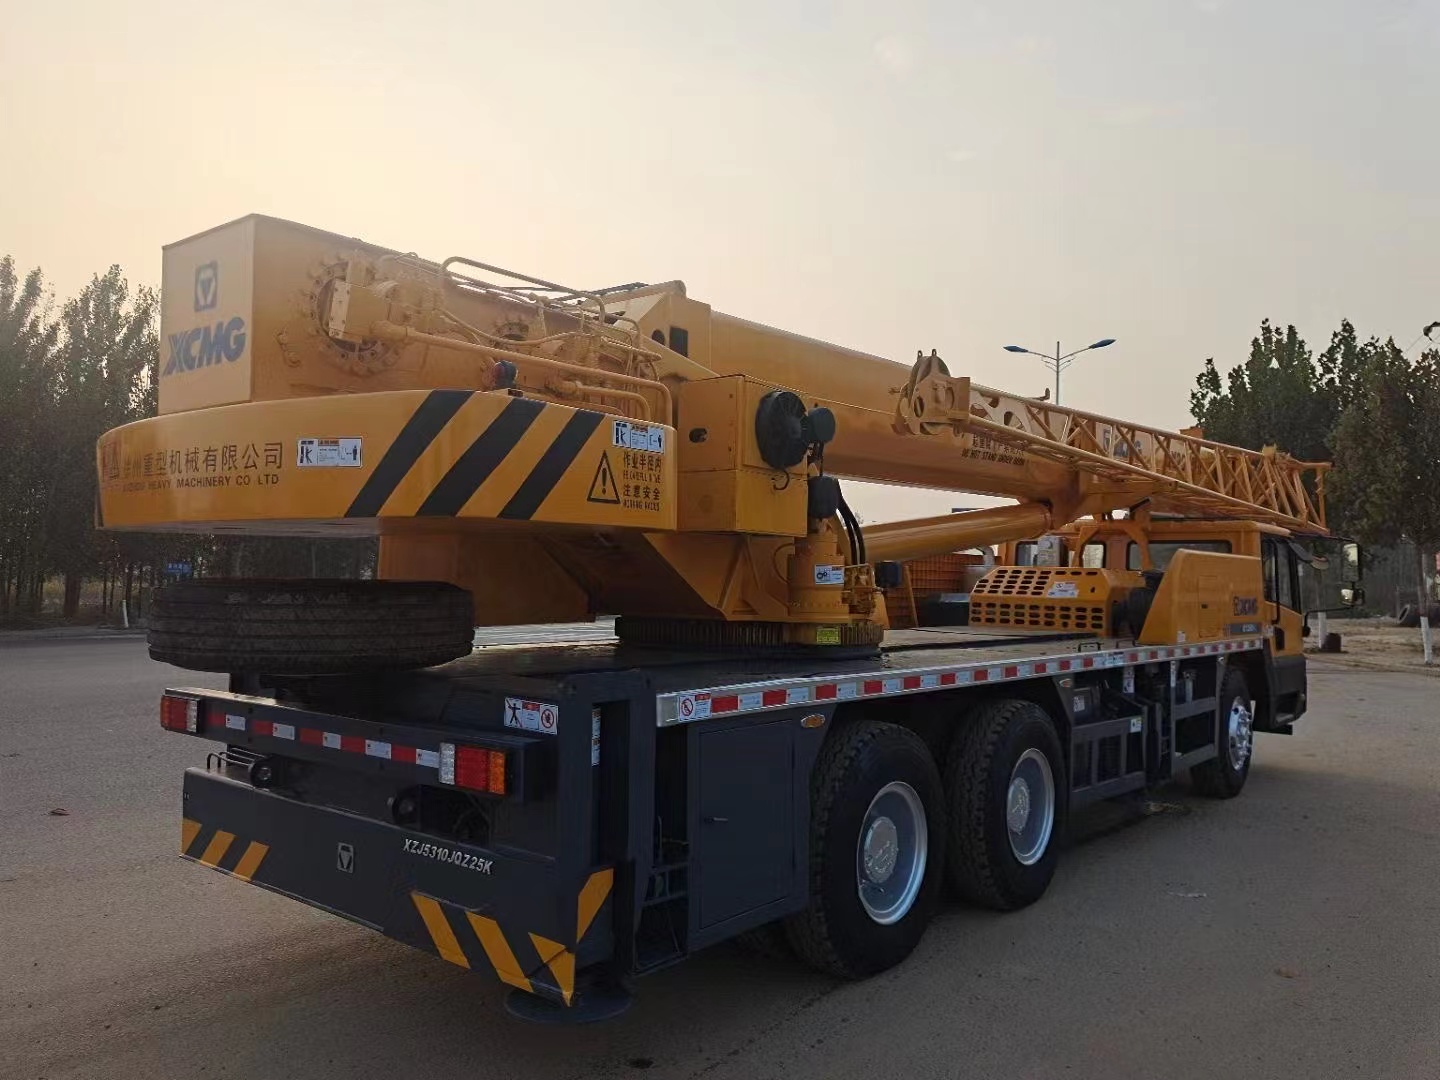 Crane bekas XCMG QY25k5 Dengan kapasitas angkat 25 ton Untuk mengangkat berbagai proyek skala besar 5